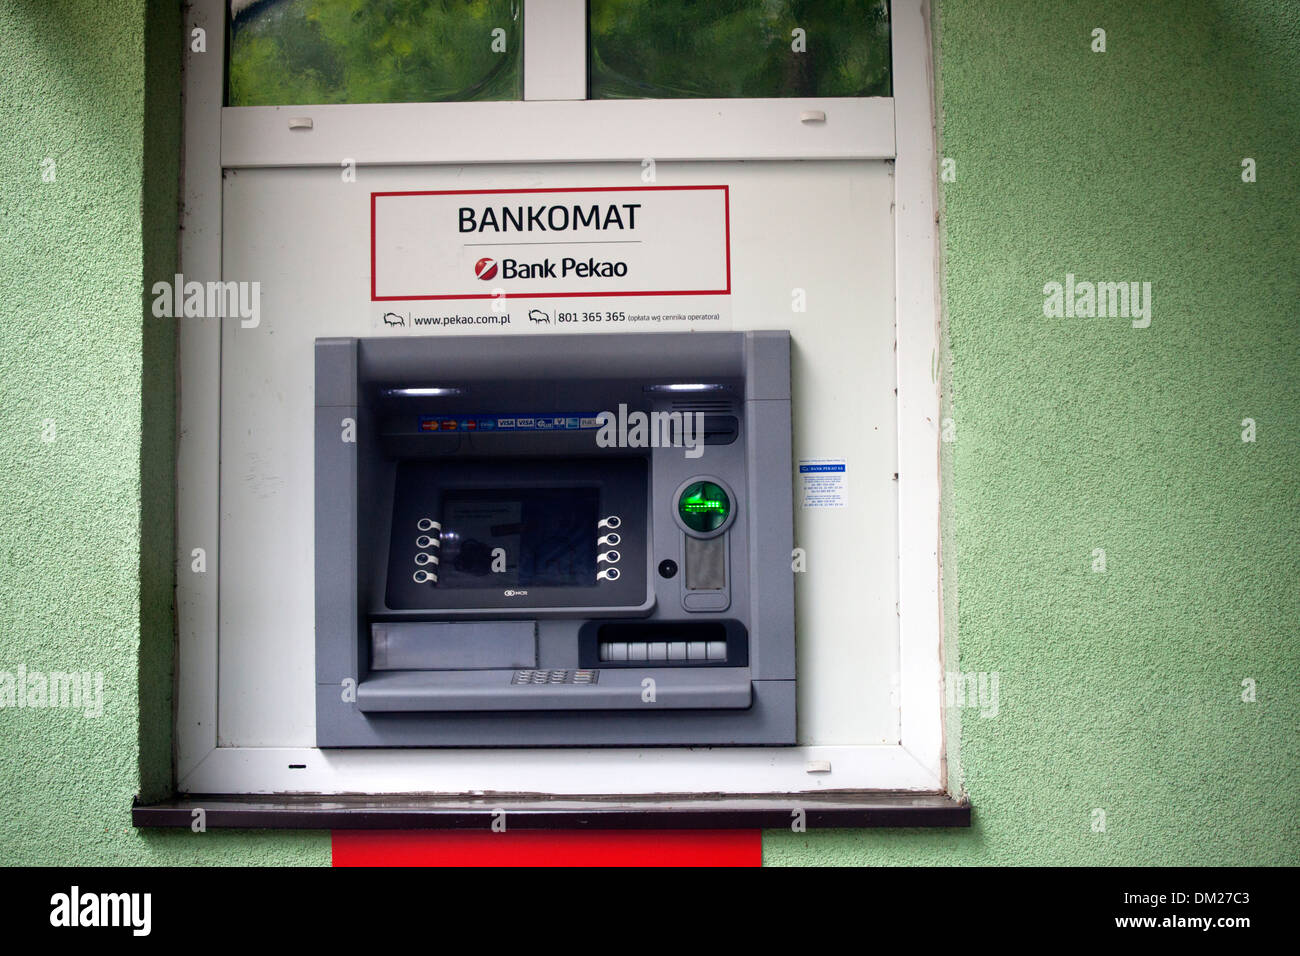 Bankomat ATM automatic teller machine. Utilizzare carta di credito per ricevere Zloty polacco moneta. Spala Polonia centrale Foto Stock